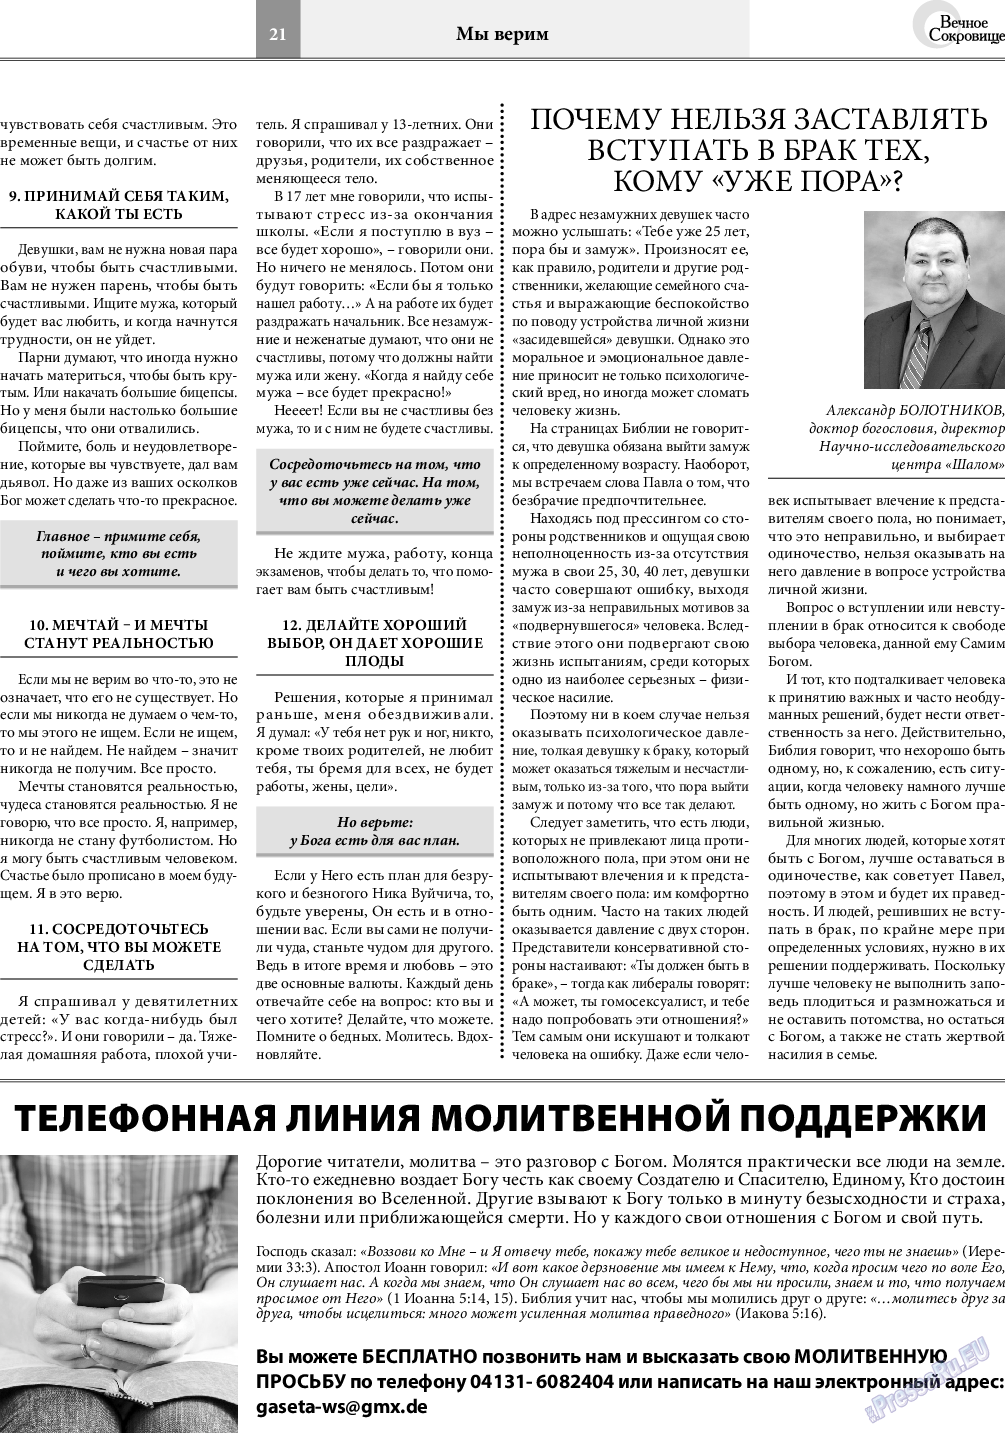 Вечное сокровище, газета. 2020 №4 стр.21